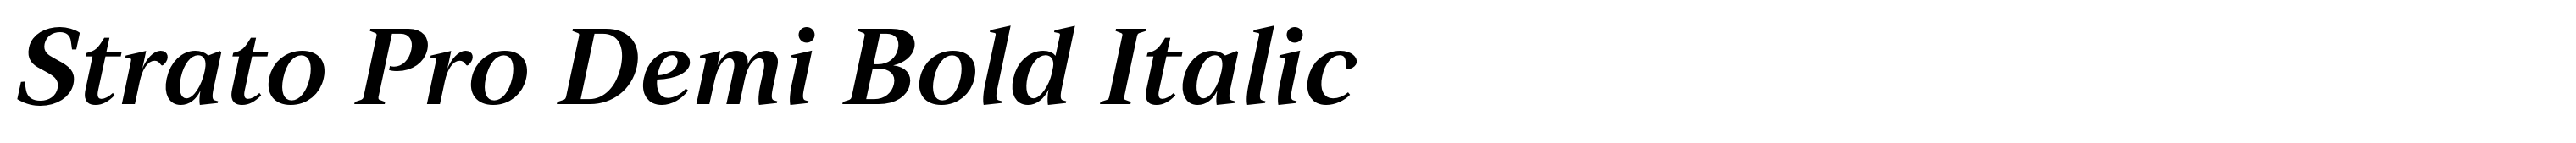 Strato Pro Demi Bold Italic